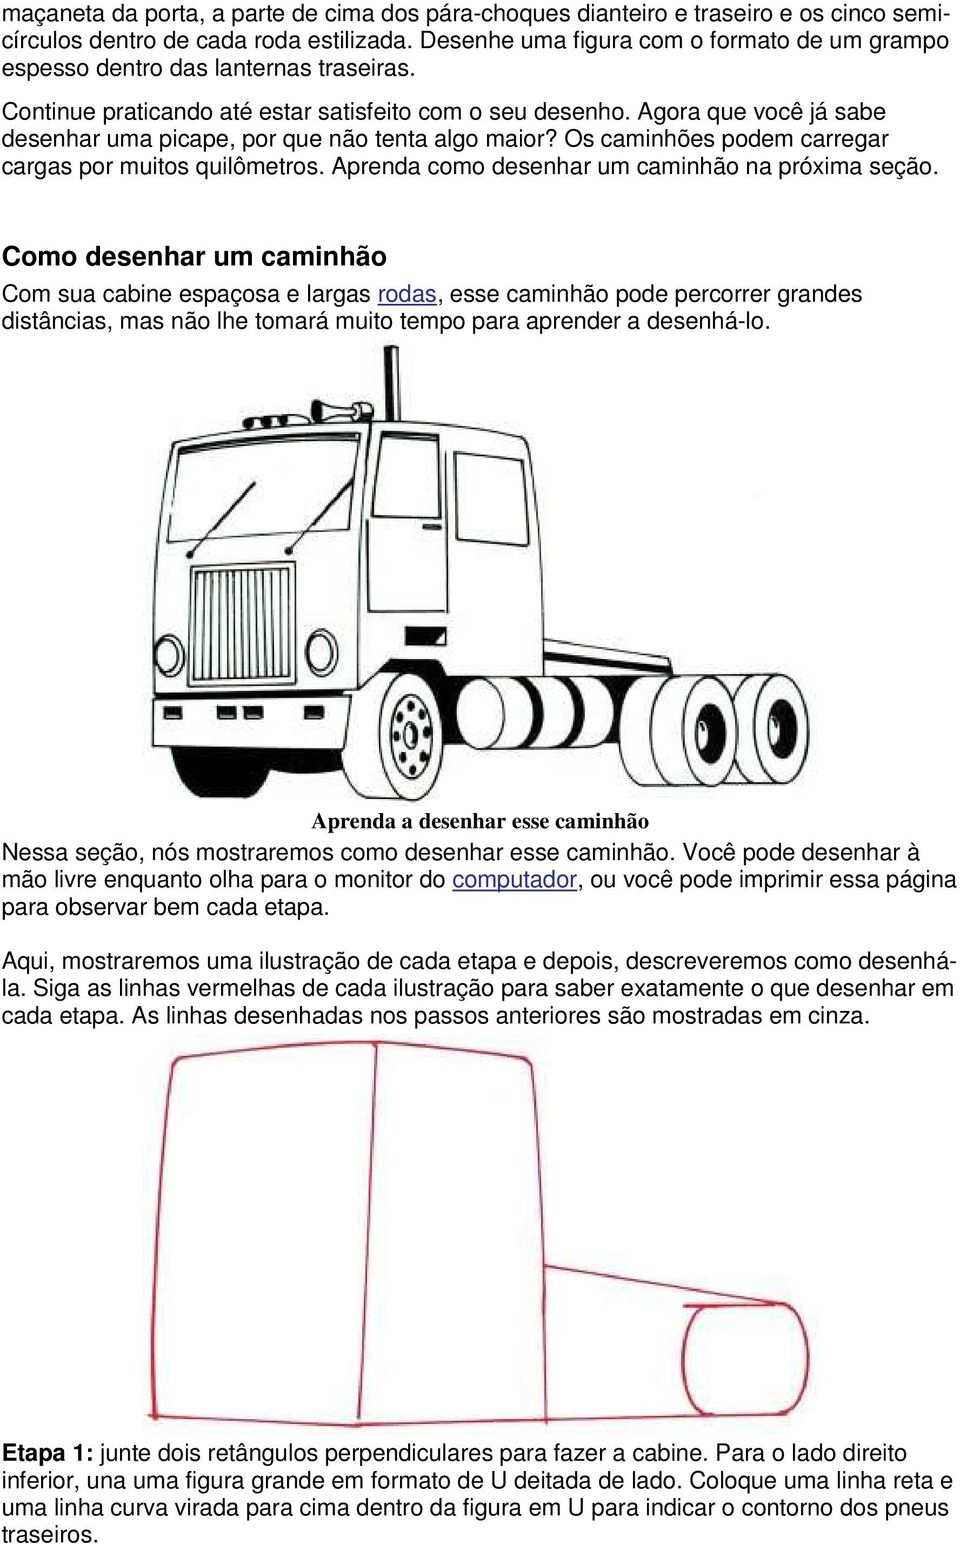 Agora que você já sabe desenhar uma picape, por que não tenta algo maior? Os caminhões podem carregar cargas por muitos quilômetros. Aprenda como desenhar um caminhão na próxima seção.